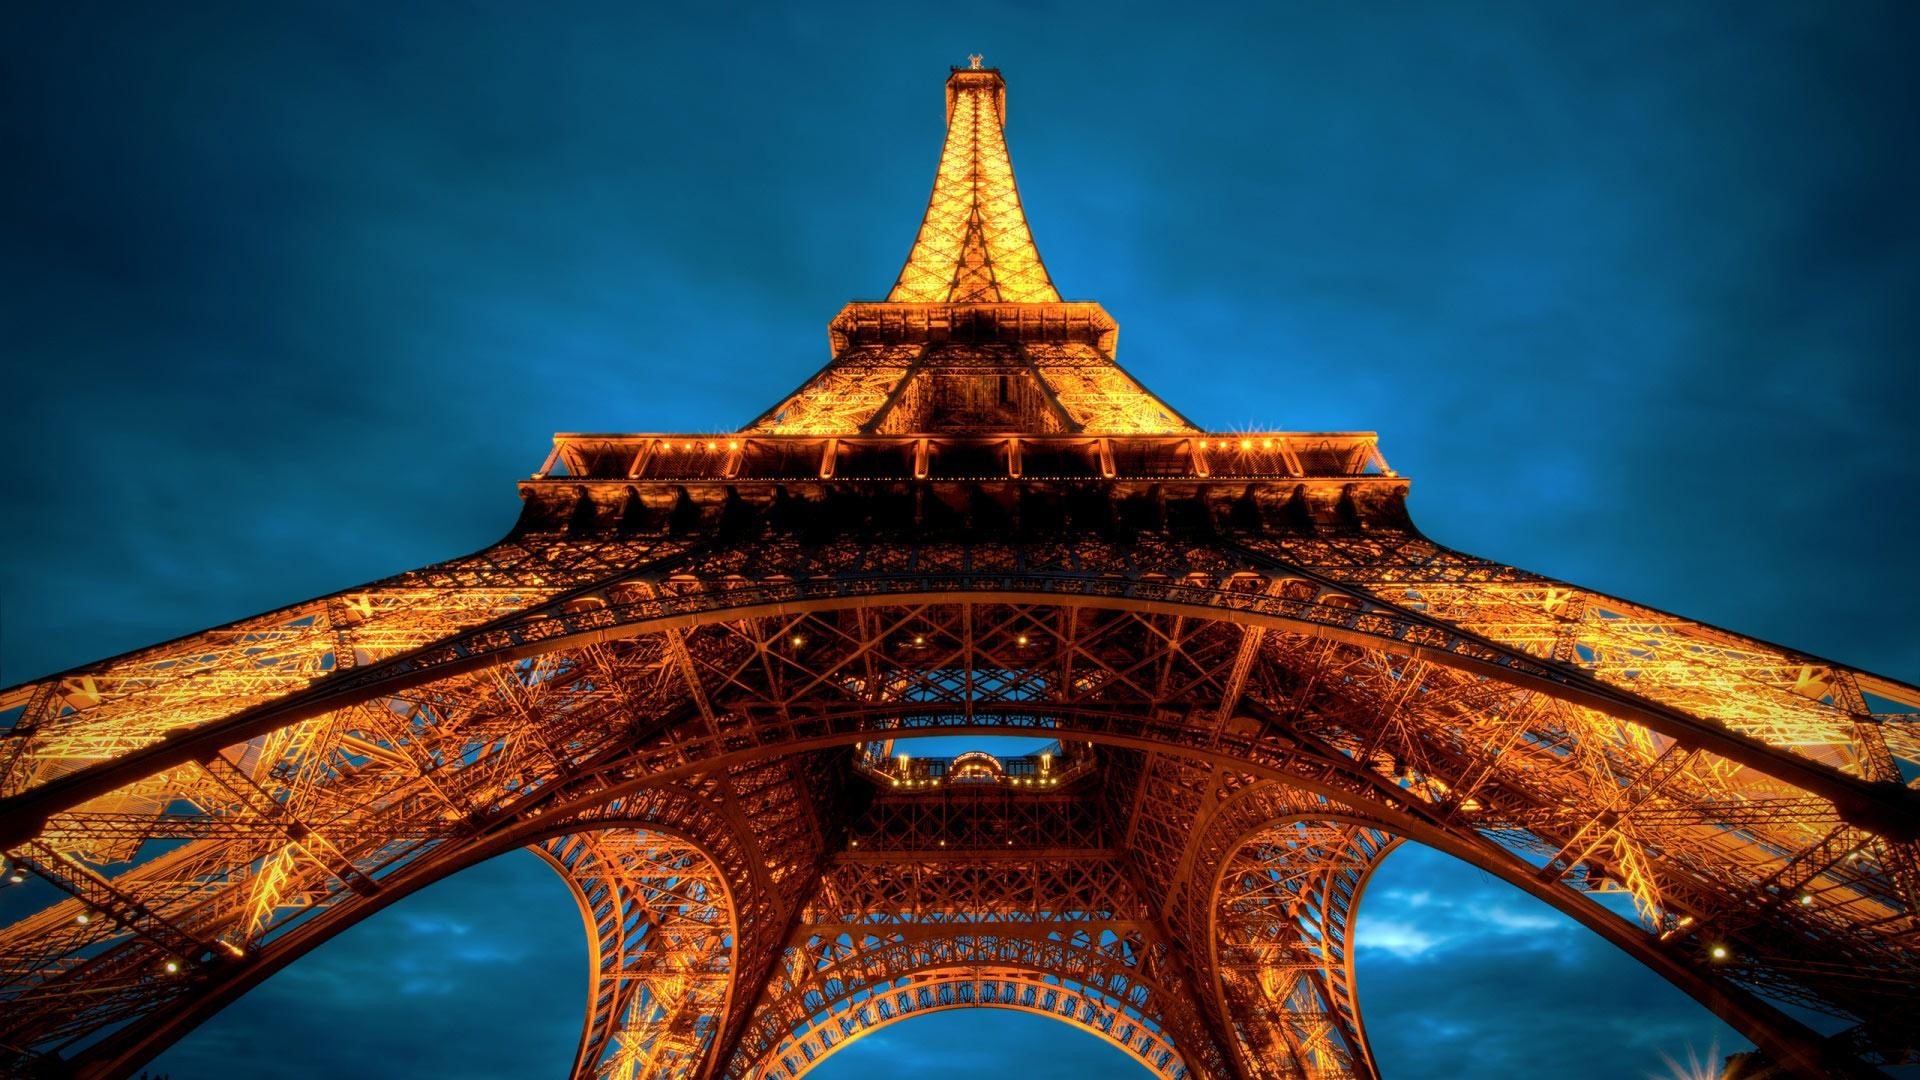 Eiffel Tower In Paris France Wonders Of The World Wallpaper - Eiffel Tower - HD Wallpaper 